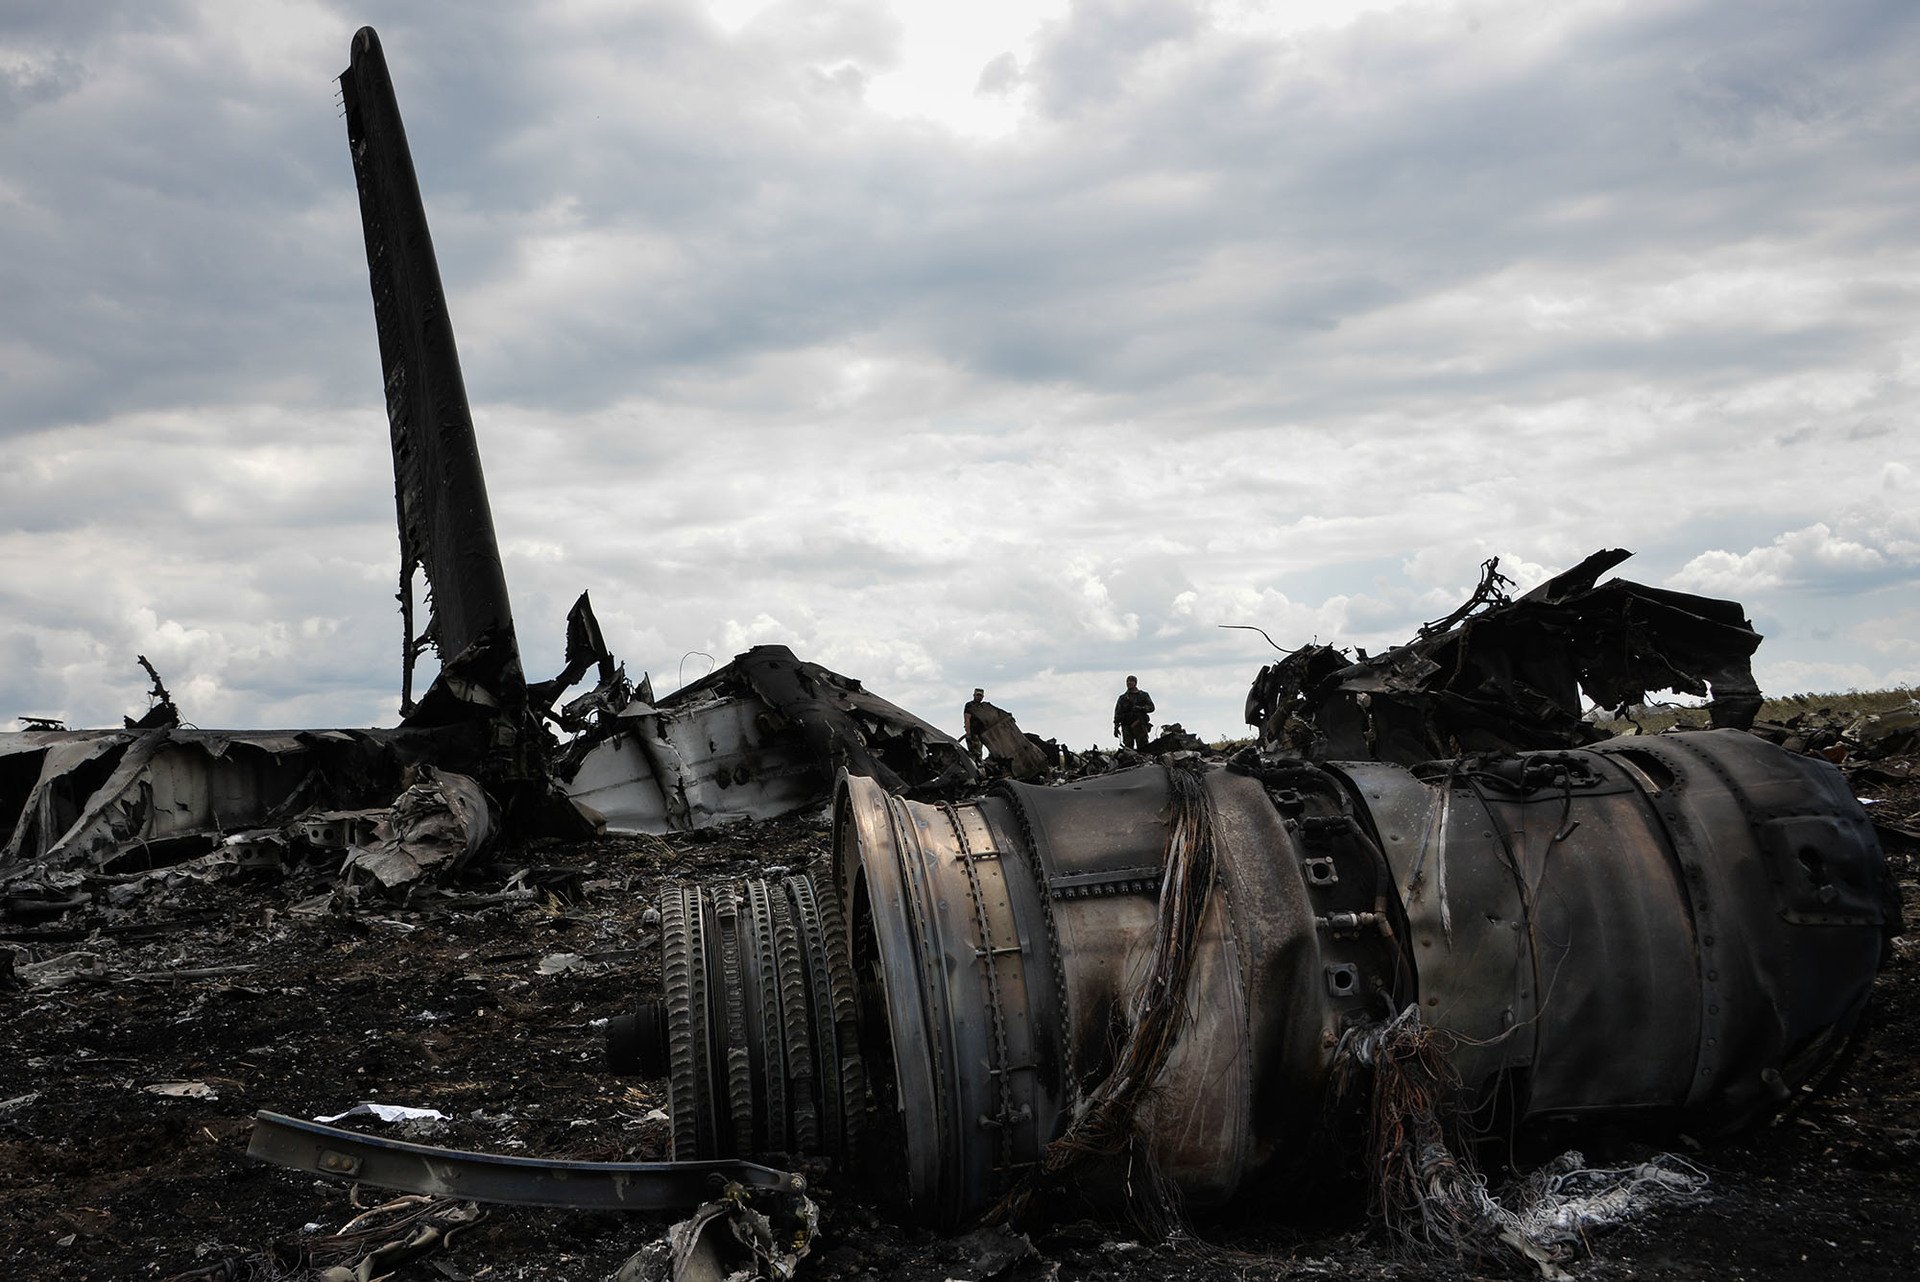 Трьох бойовиків заочно засудили до довічного ув'язнення через збиття літака ІЛ-76 у 2014 році